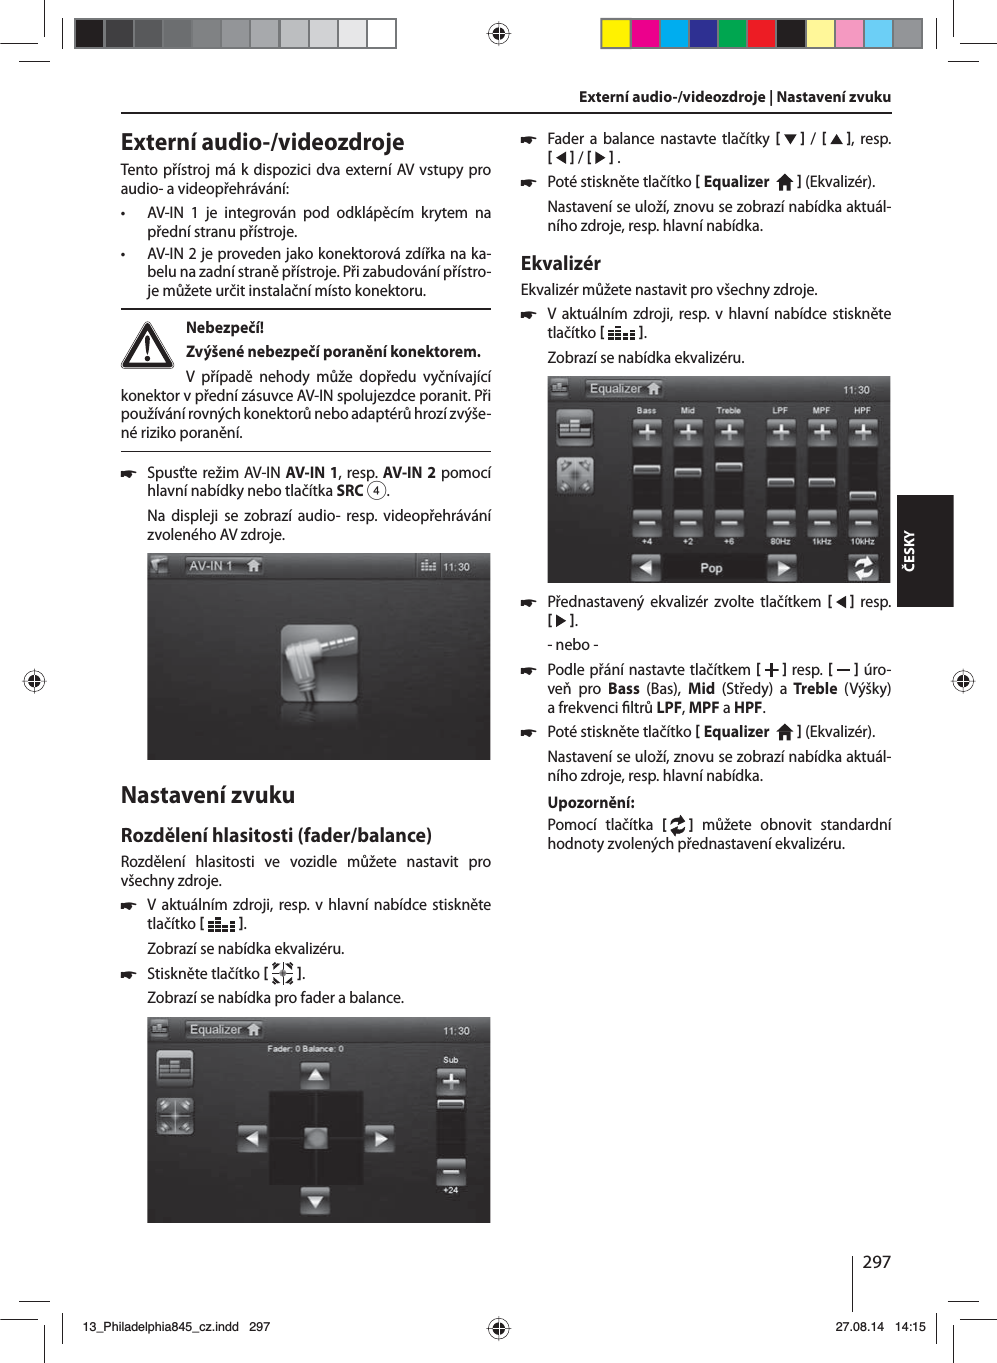 297ČESKYExterní audio-/videozdrojeTento přístroj má kdispozici dva externí AV vstupy pro audio- avideopřehrávání:  • AV-IN 1 je integrován pod odklápěcím krytem na přední stranu přístroje. • AV-IN 2 je proveden jako konektorová zdířka na ka-belu na zadní straně přístroje. Při zabudování přístro-je můžete určit instalační místo konektoru. Nebezpečí! Zvýšené nebezpečí poranění konektorem.V případě nehody může dopředu vyčnívající konektor vpřední zásuvce AV-IN spolujezdce poranit. Při používání rovných konektorů nebo adaptérů hrozí zvýše-né riziko poranění. 쏅Spusťte režim AV-IN AV-IN1, resp. AV-IN2 pomocí hlavní nabídky nebo tlačítka SRC4.Na displeji se zobrazí audio- resp. videopřehrávání zvoleného AV zdroje. Nastavení zvukuRozdělení hlasitosti (fader/balance)Rozdělení hlasitosti ve vozidle můžete nastavit pro všechny zdroje. 쏅Vaktuálním zdroji, resp. vhlavní nabídce stiskněte tlačítko   .Zobrazí se nabídka ekvalizéru. 쏅Stiskněte tlačítko   .Zobrazí se nabídka pro fader abalance.Externí audio-/videozdroje | Nastavení zvuku  쏅Fader a balance nastavte tlačítky     /    , resp.    /     . 쏅Poté stiskněte tlačítko  Equalizer     (Ekvalizér). Nastavení se uloží, znovu se zobrazí nabídka aktuál-ního zdroje, resp. hlavní nabídka.EkvalizérEkvalizér můžete nastavit pro všechny zdroje. 쏅Vaktuálním zdroji, resp. vhlavní nabídce stiskněte tlačítko   .Zobrazí se nabídka ekvalizéru. 쏅Přednastavený ekvalizér zvolte tlačítkem      resp.    .- nebo - 쏅Podle přání nastavte tlačítkem    resp.     úro-veň pro Bass  (Bas),  Mid  (Středy) a Treble  (Výšky) afrekvenci  ltrů LPF, MPF aHPF. 쏅Poté stiskněte tlačítko  Equalizer     (Ekvalizér). Nastavení se uloží, znovu se zobrazí nabídka aktuál-ního zdroje, resp. hlavní nabídka.Upozornění:Pomocí tlačítka [  ] můžete obnovit standardní hodnoty zvolených přednastavení ekvalizéru. 13_Philadelphia845_cz.indd 29713_Philadelphia845_cz.indd   29727.08.14 14:1527.08.14   14:15